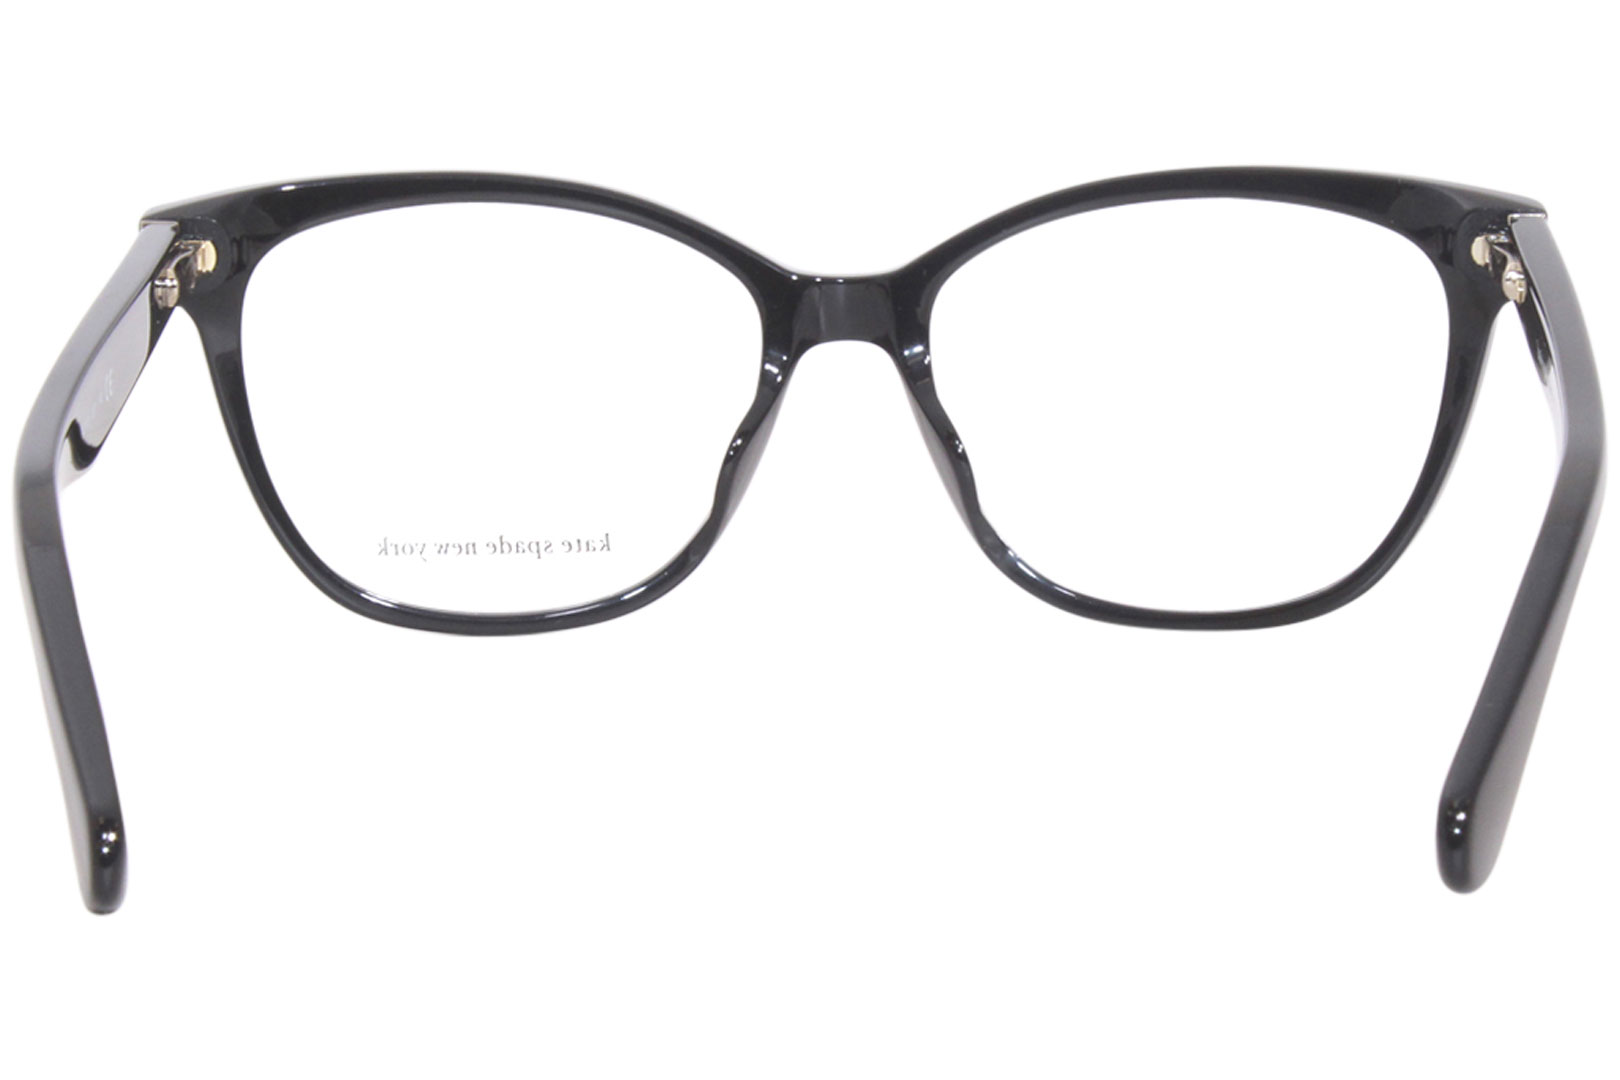 Kate Spade Adrie 807 Eyeglasses Women's Black Full Rim Square Shape  53-16-140 